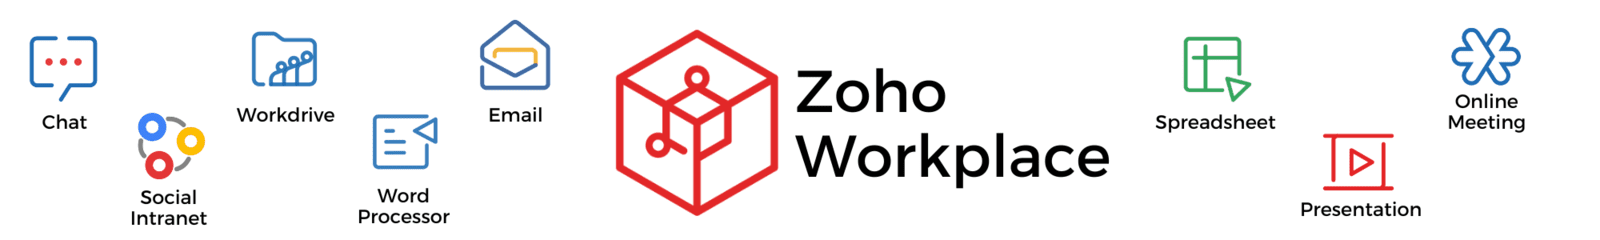 Zoho Workplace Apps